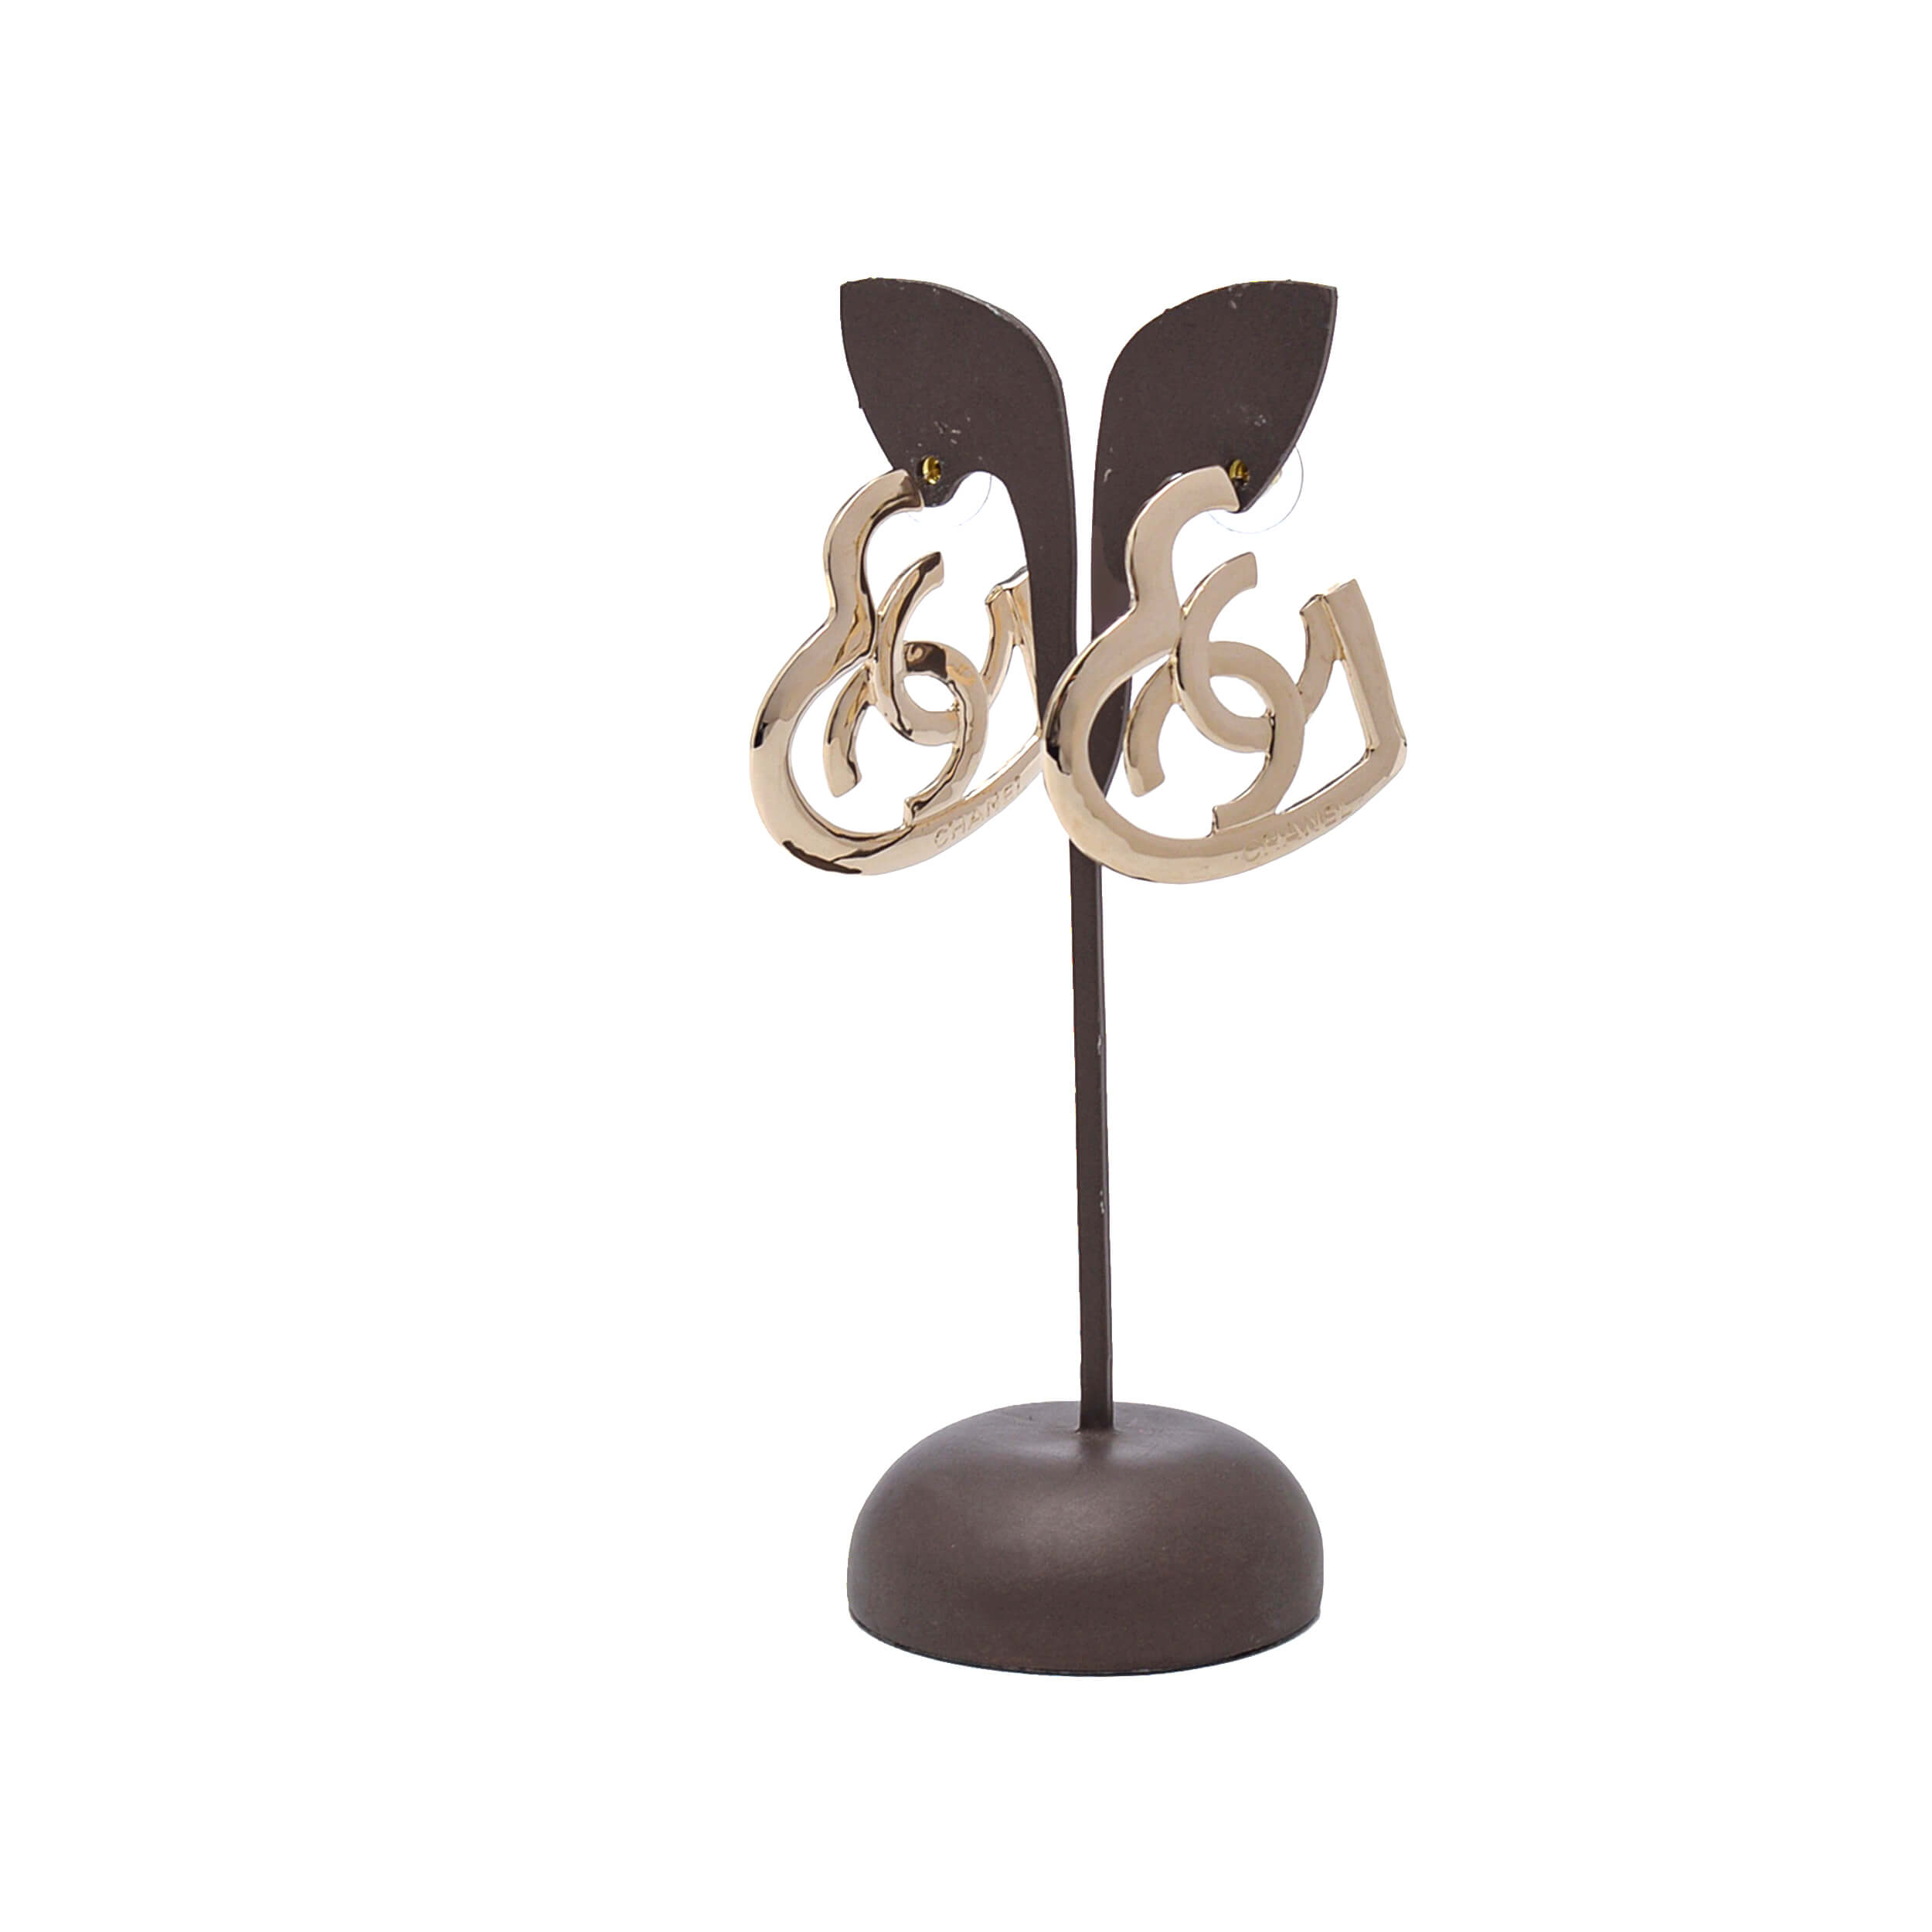 Chanel - Light Gold Tone Heart Earrings